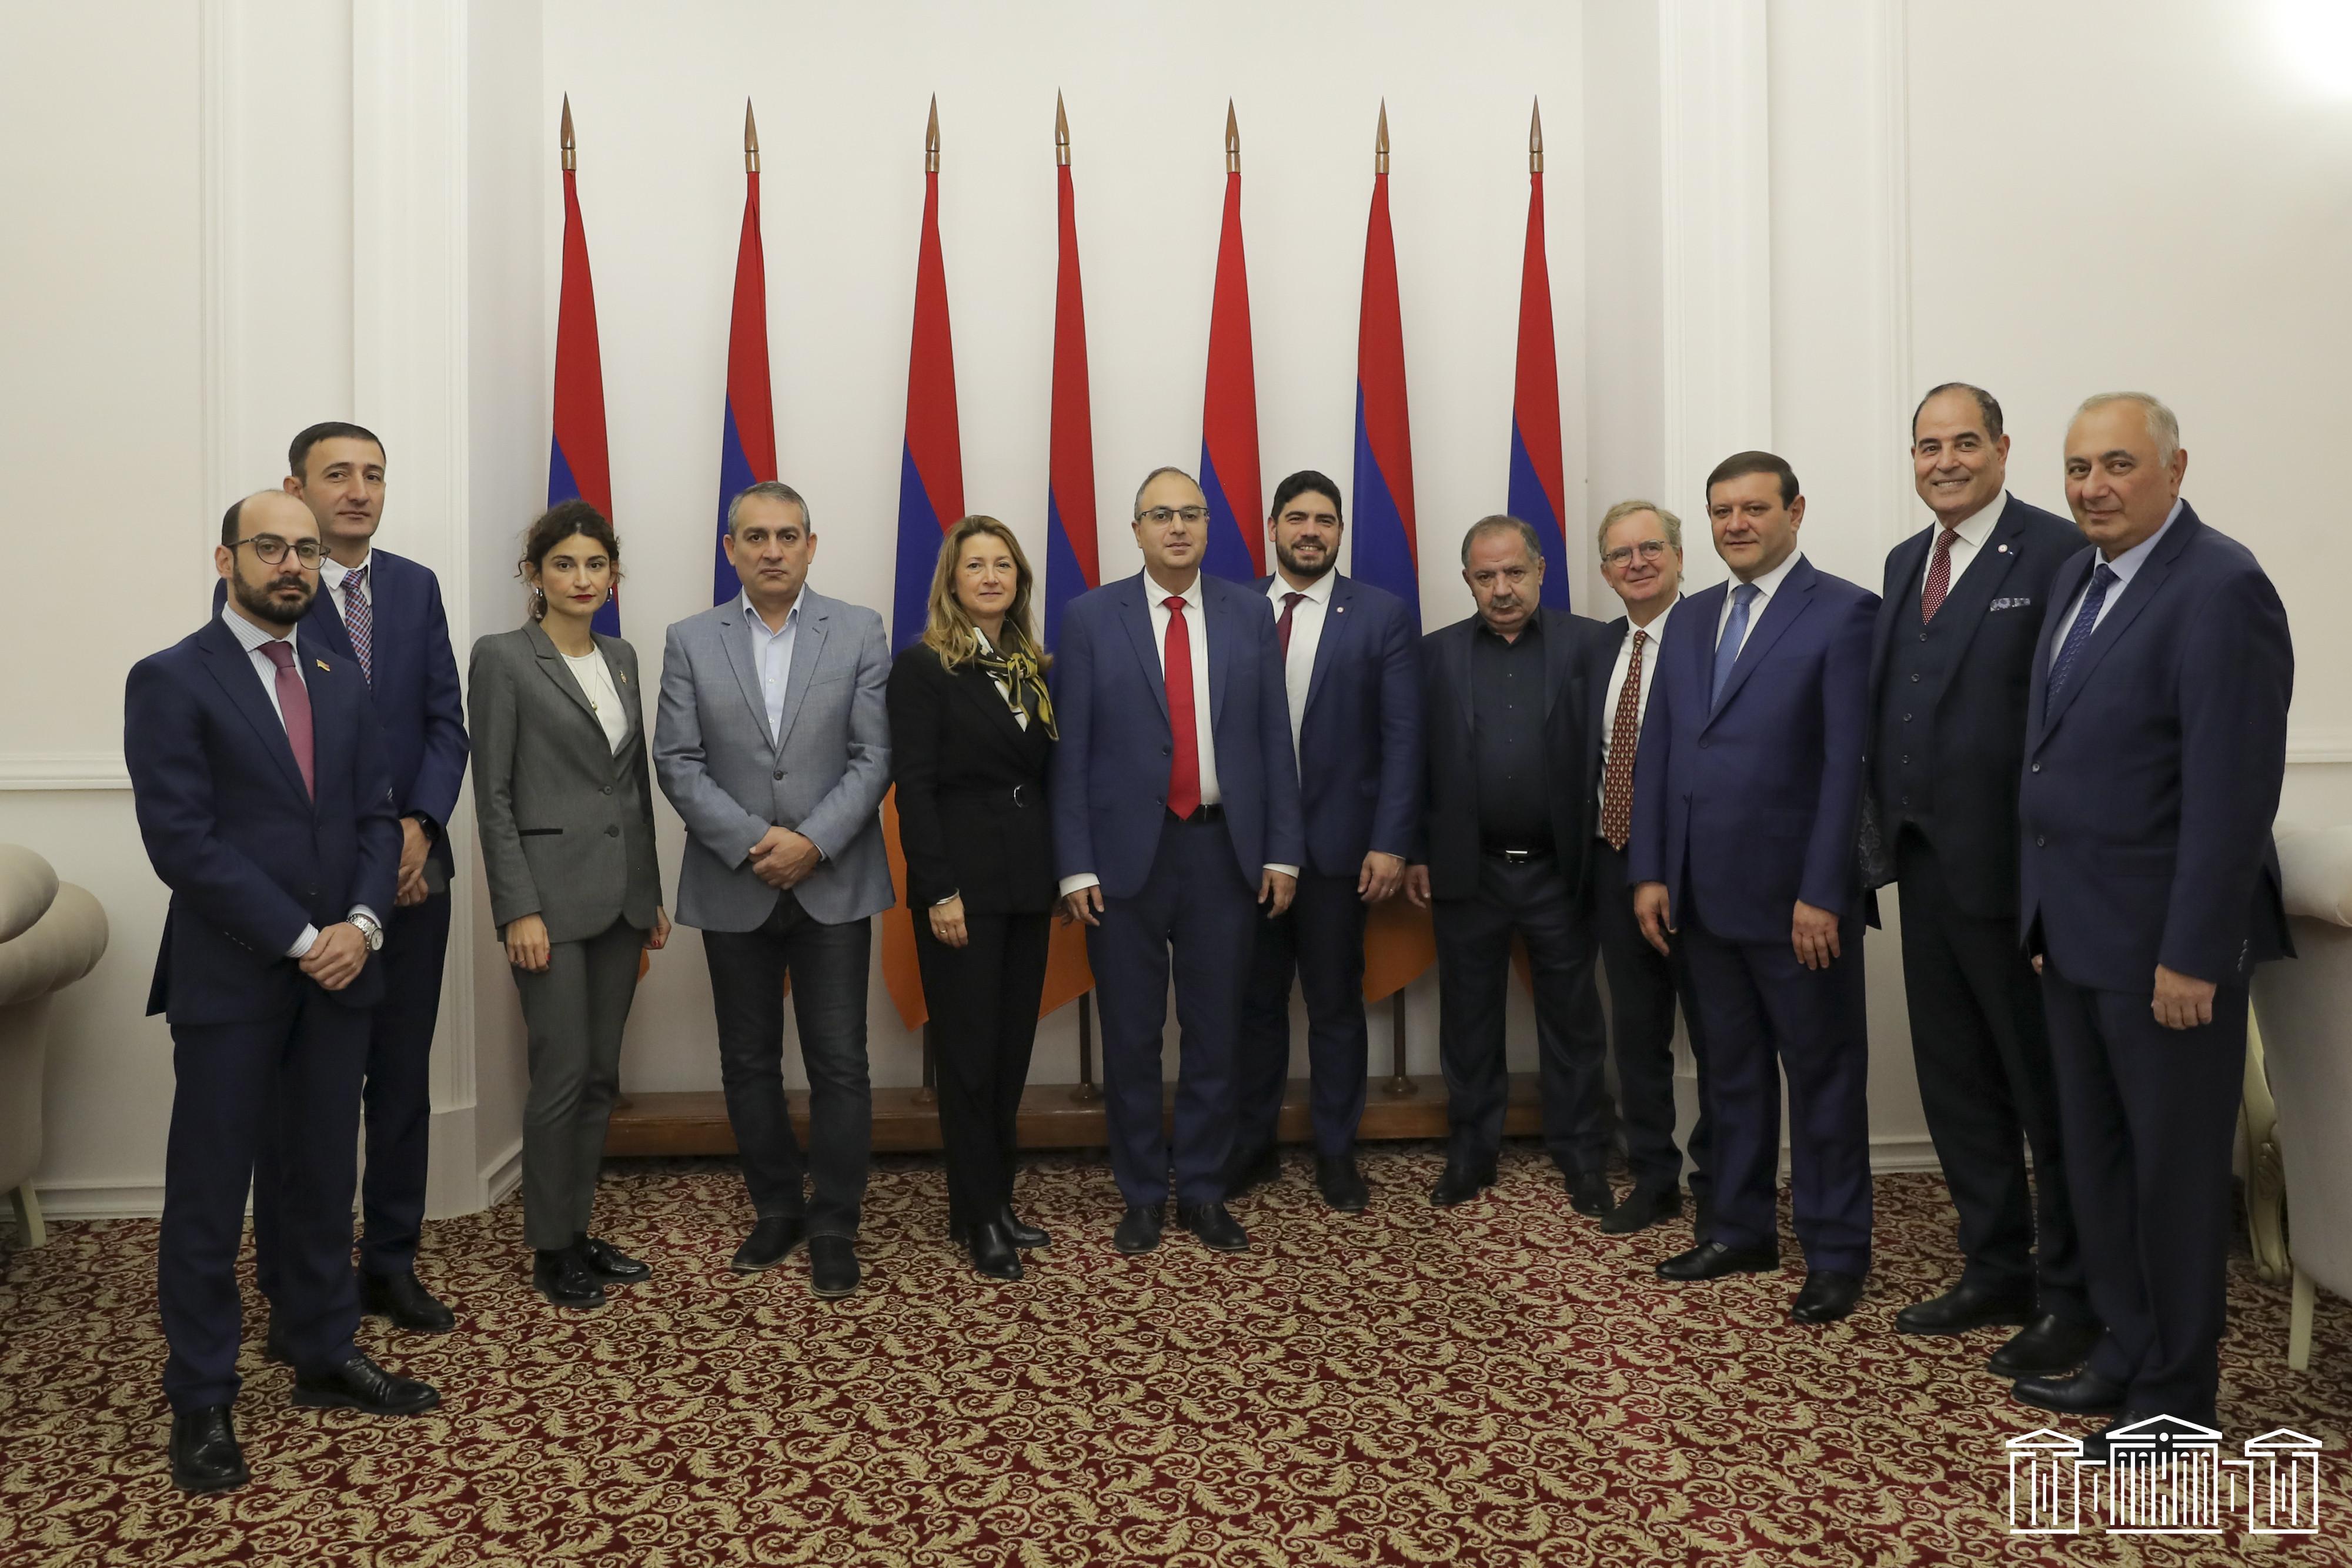 Fransız Milletvekilleri: "Bu zor dönemde Ermenilerle birlikte olmak için Ermenistan'a geldik"